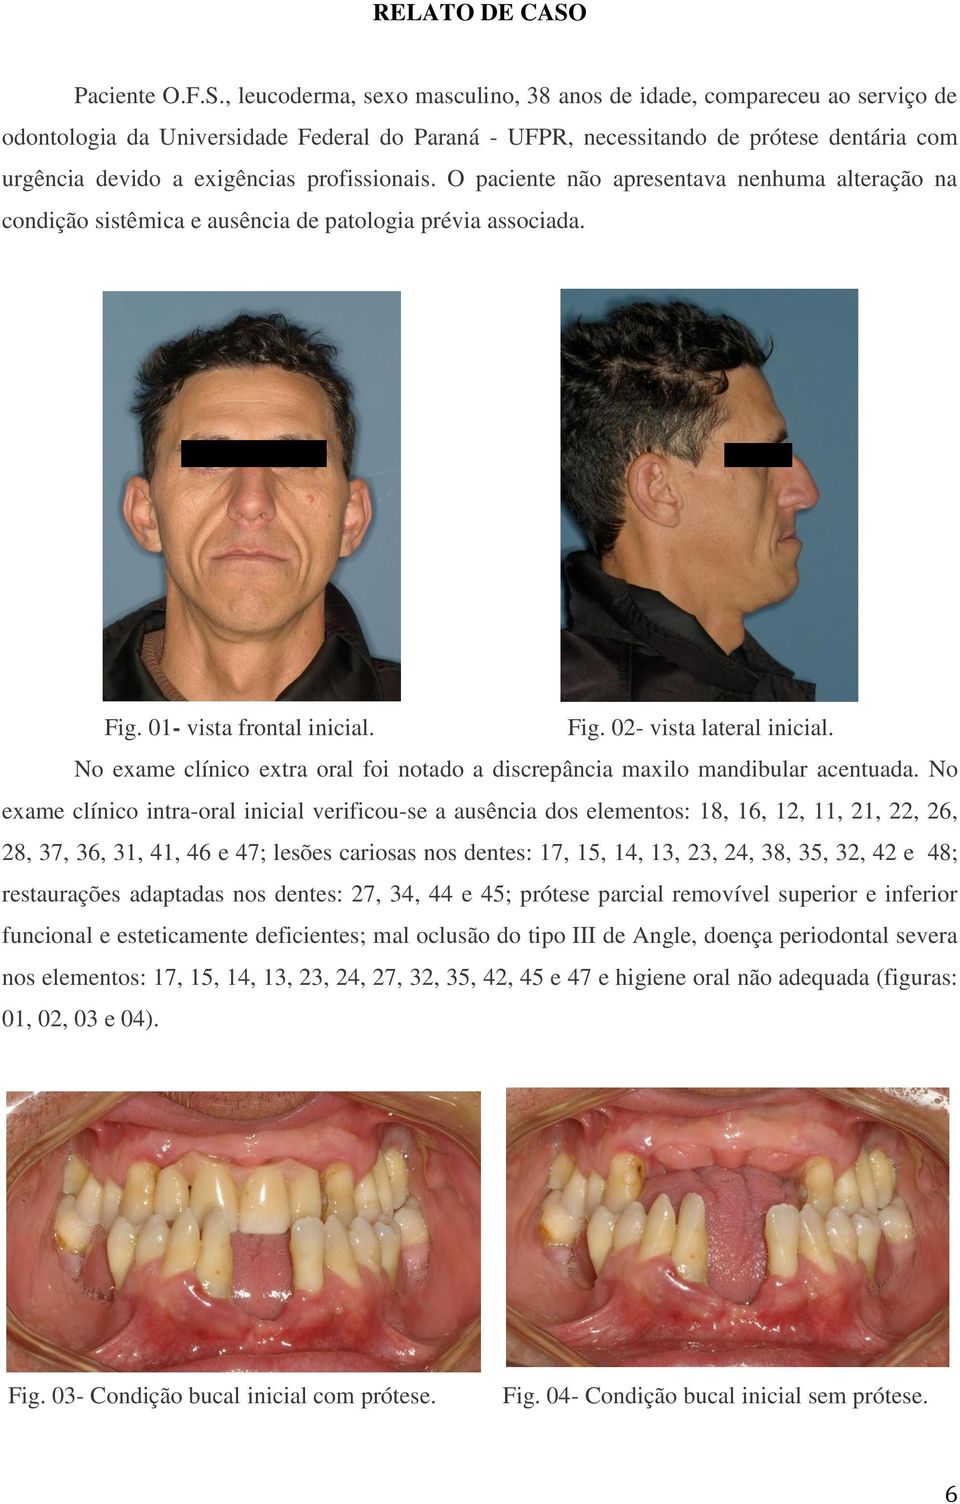 , leucoderma, sexo masculino, 38 anos de idade, compareceu ao serviço de odontologia da Universidade Federal do Paraná - UFPR, necessitando de prótese dentária com urgência devido a exigências